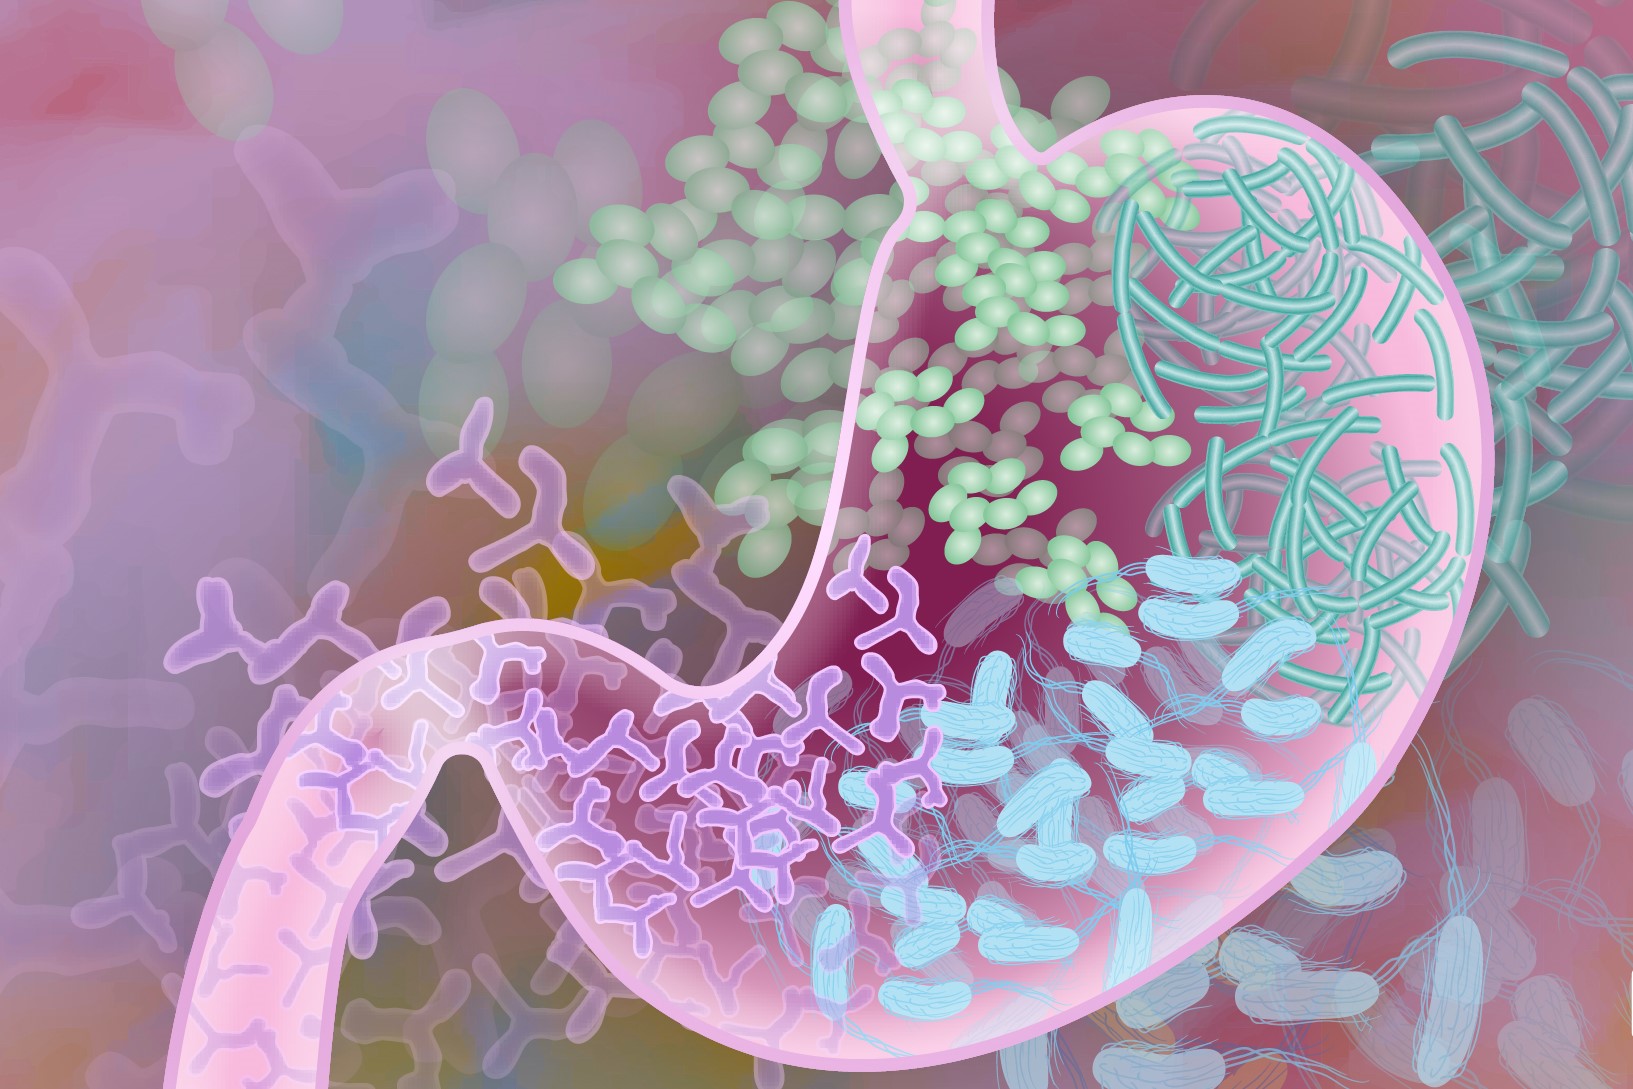 Возможности препаратов на основе микробных метаболитов для восстановления кишечной микробиоты